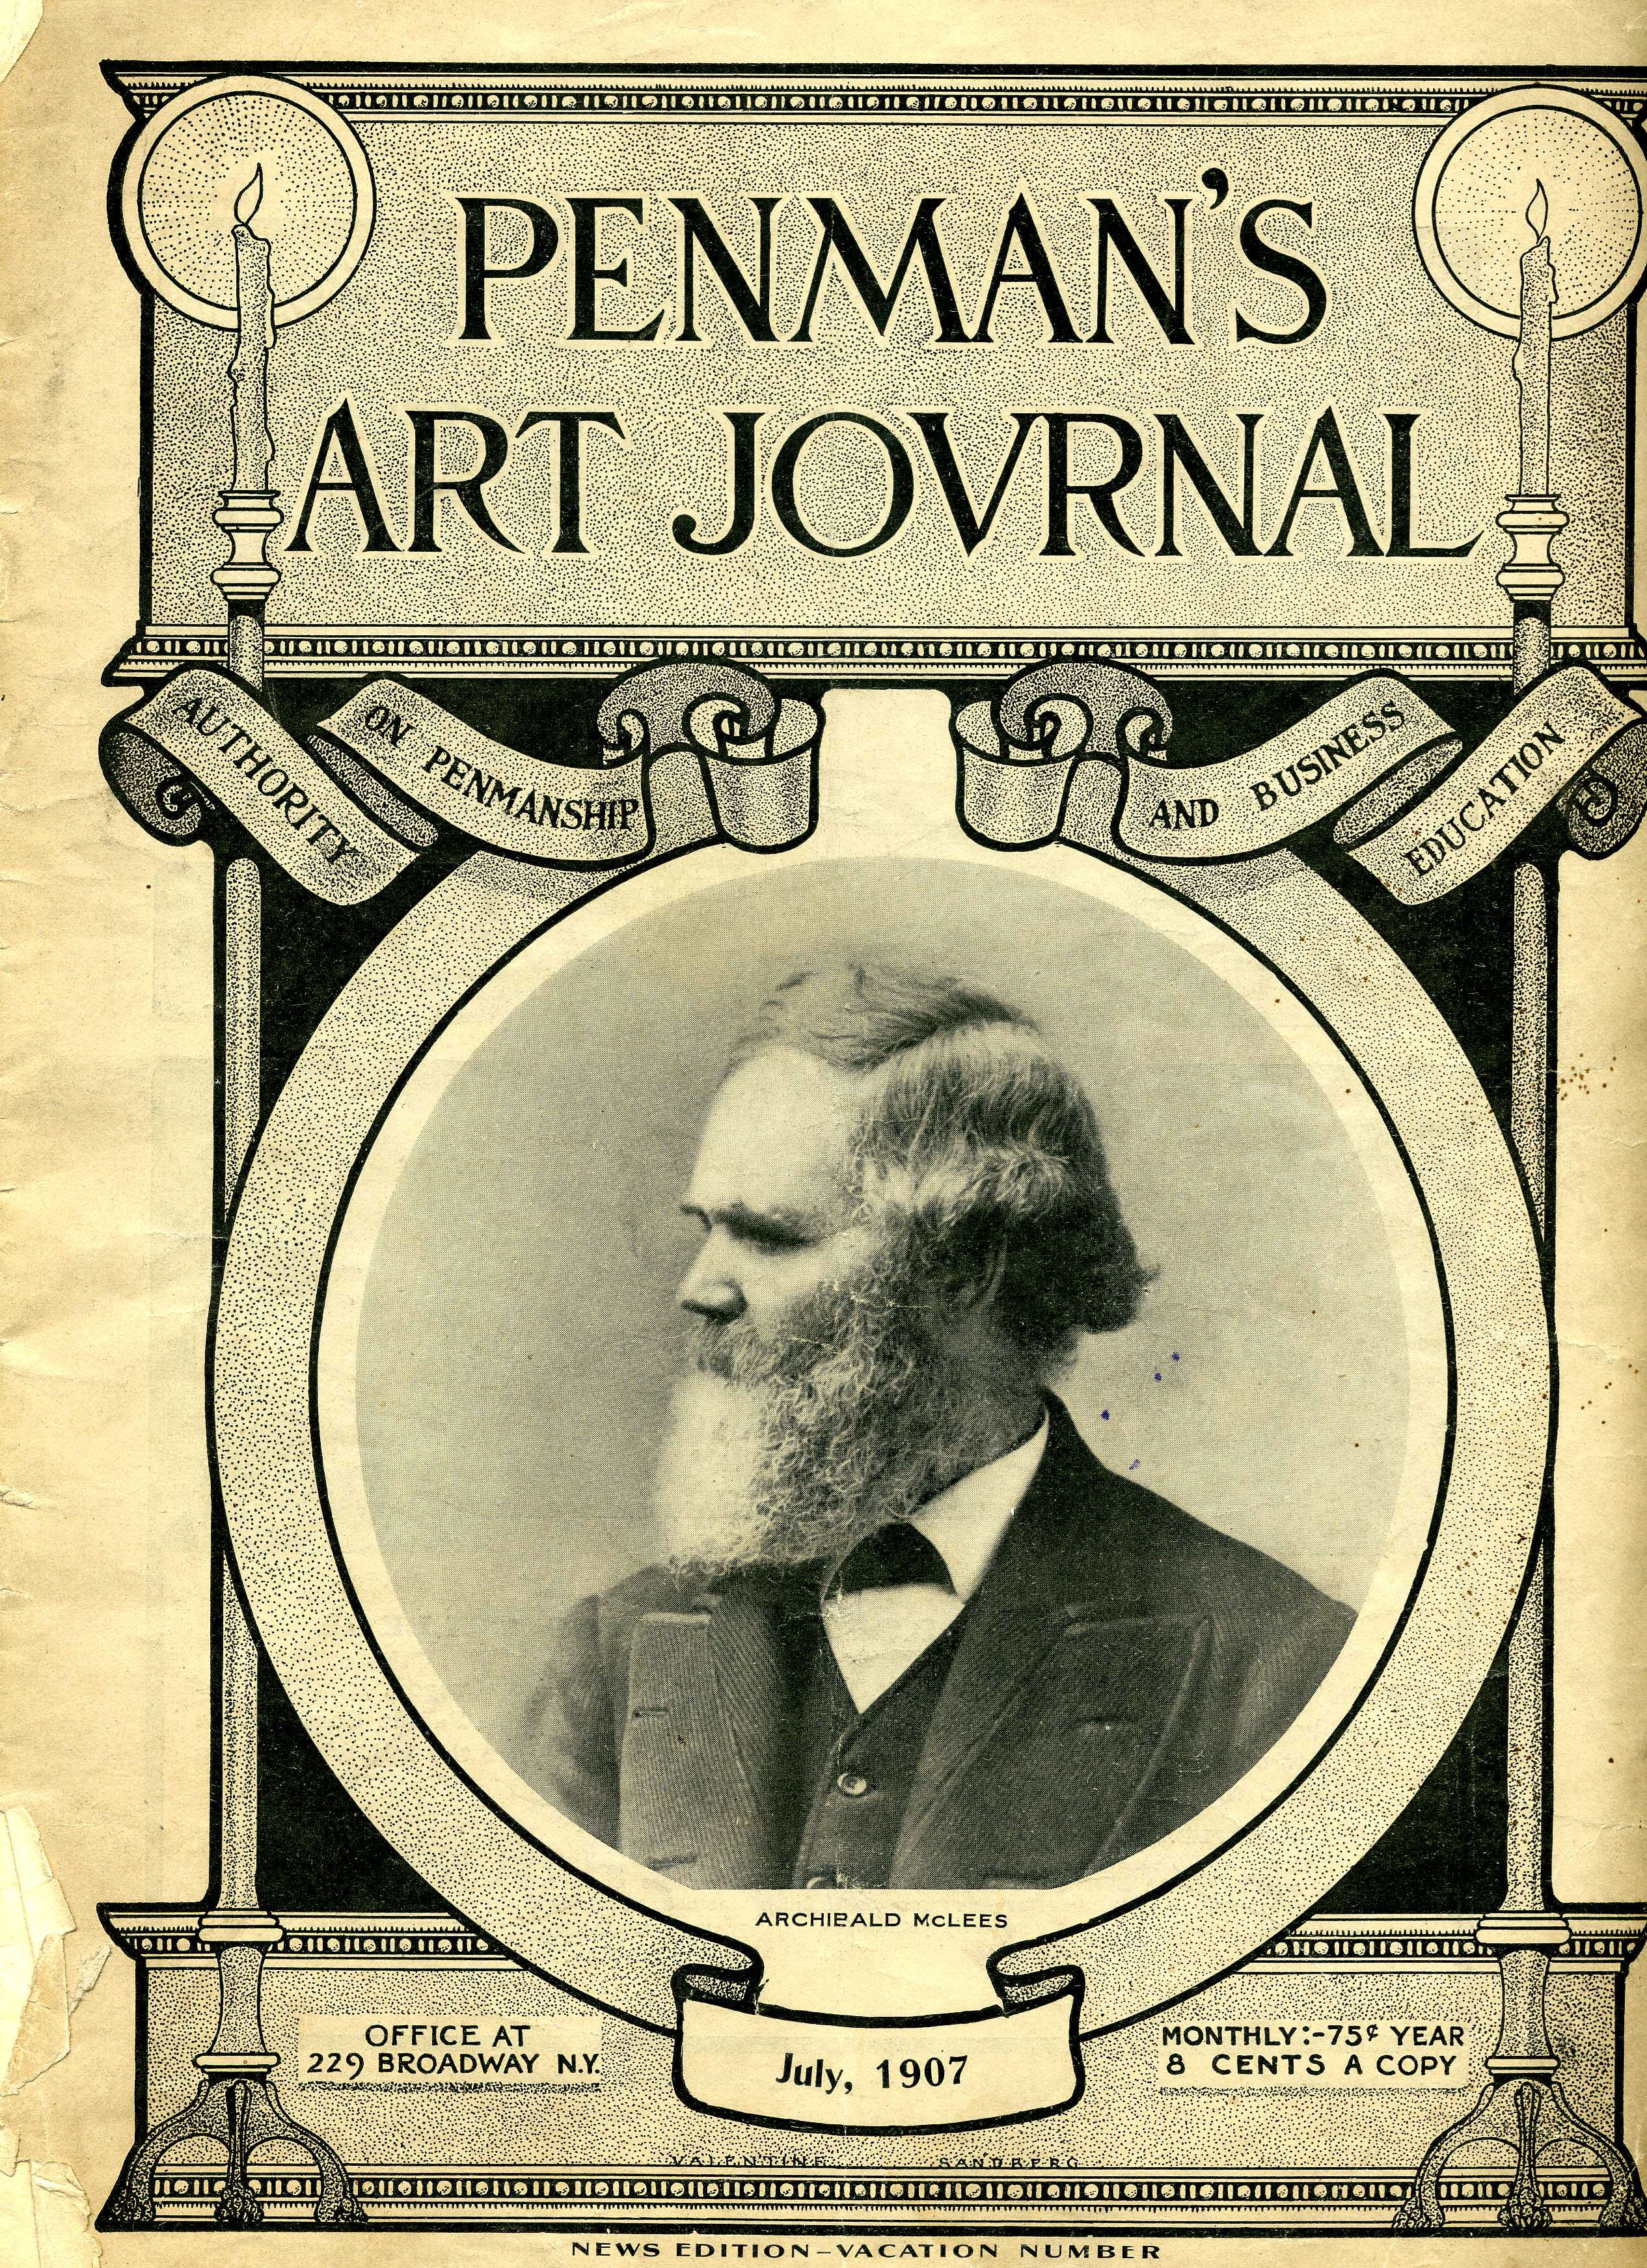 On the cover of PENMANS ARTJOVRNAL